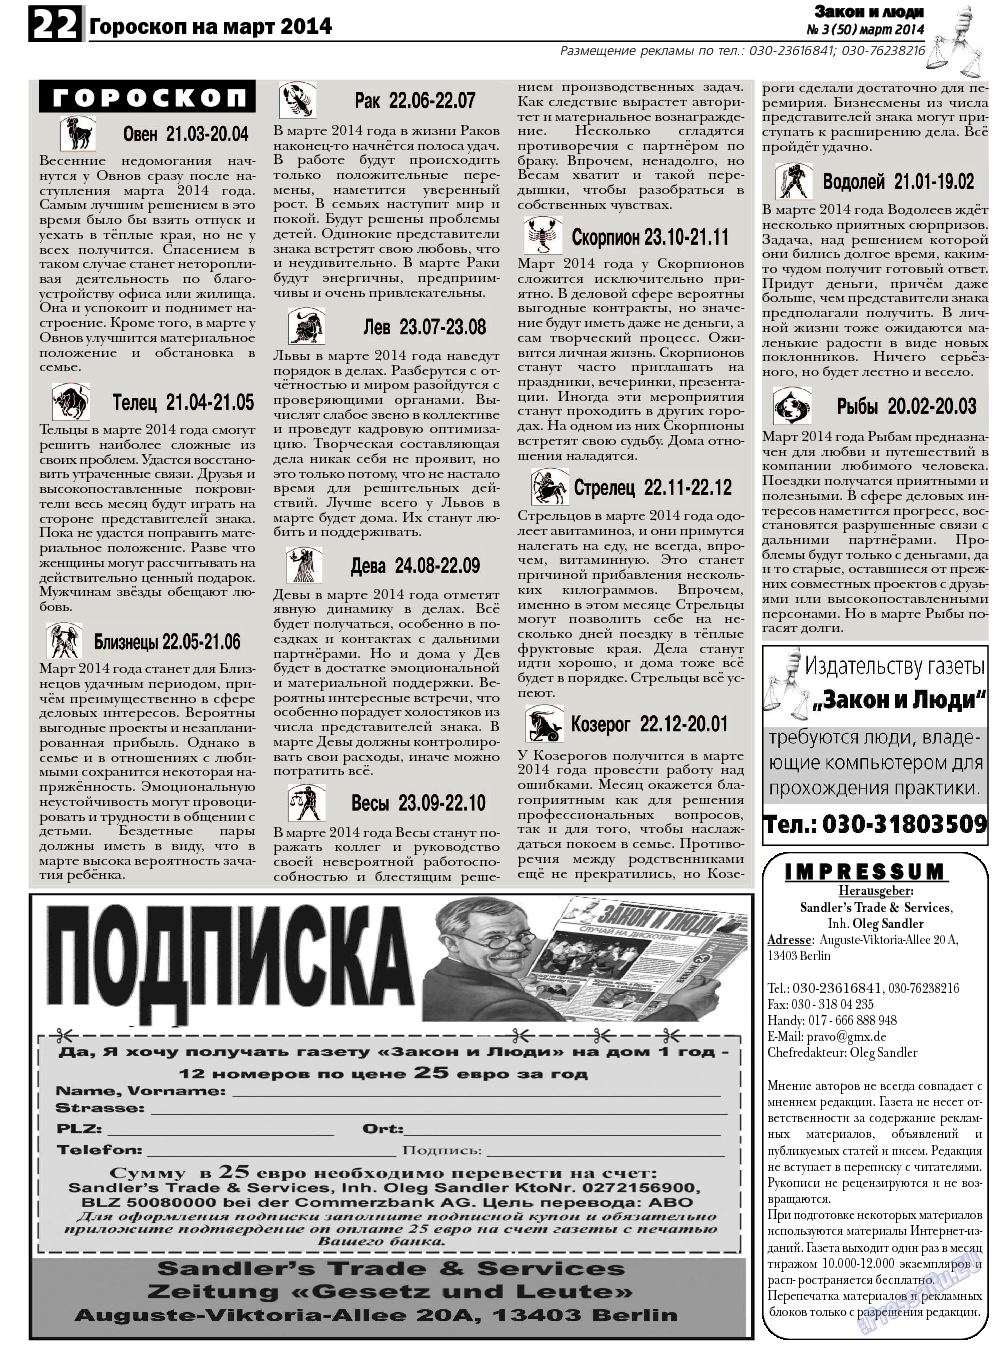 Закон и люди, газета. 2014 №3 стр.22